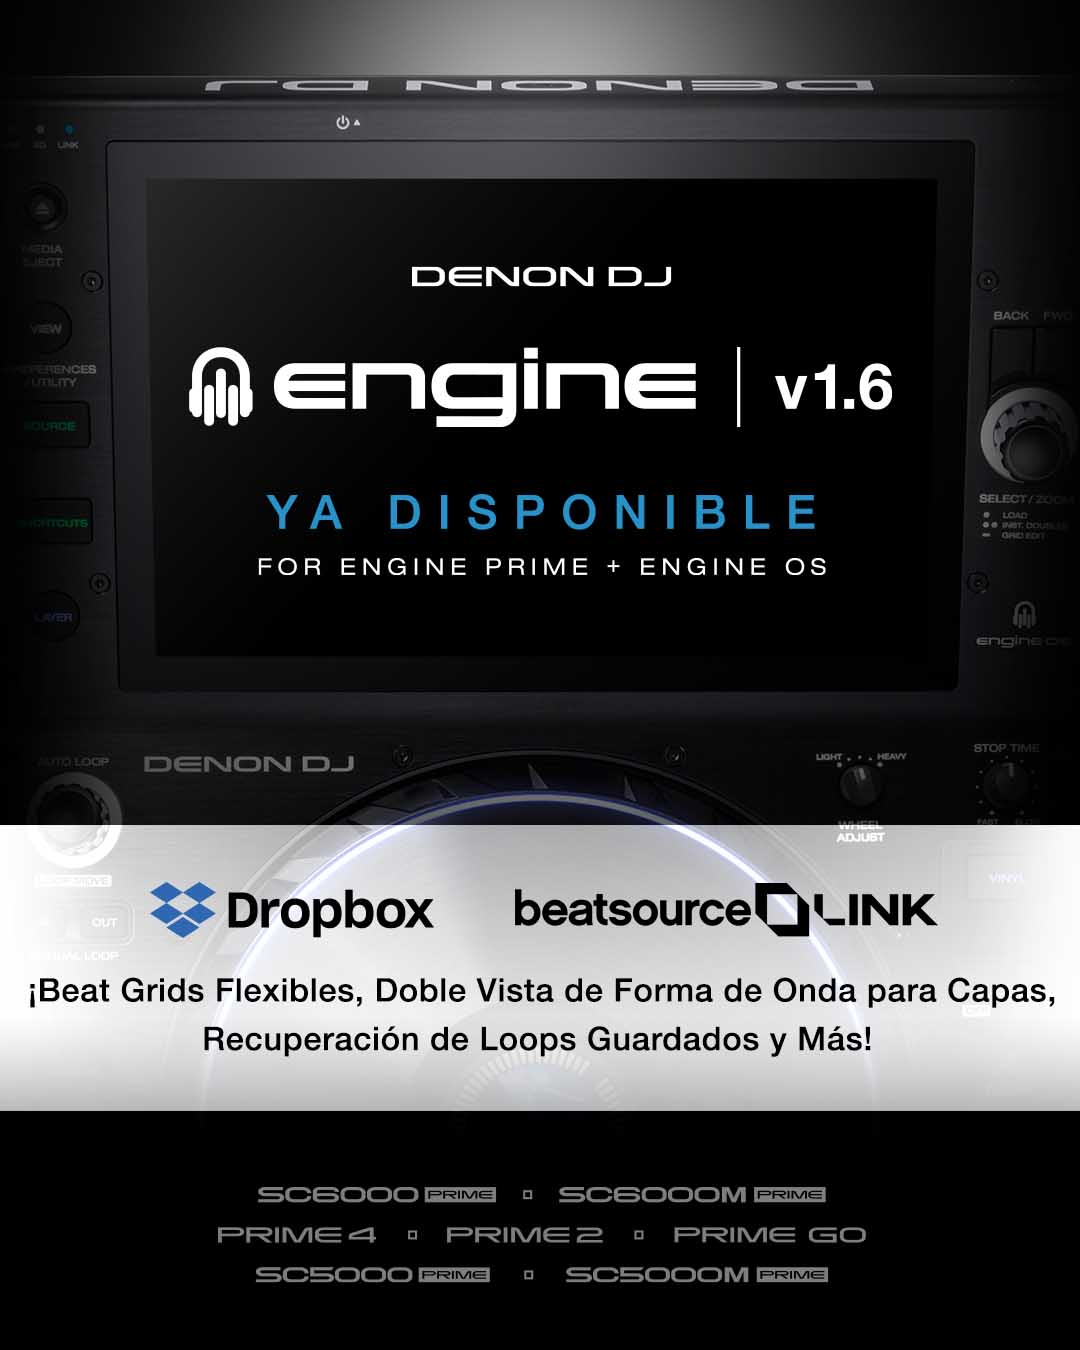 Nueva actualización Engine OS 1.6 y Engine Prime 1.6 de Denon DJ